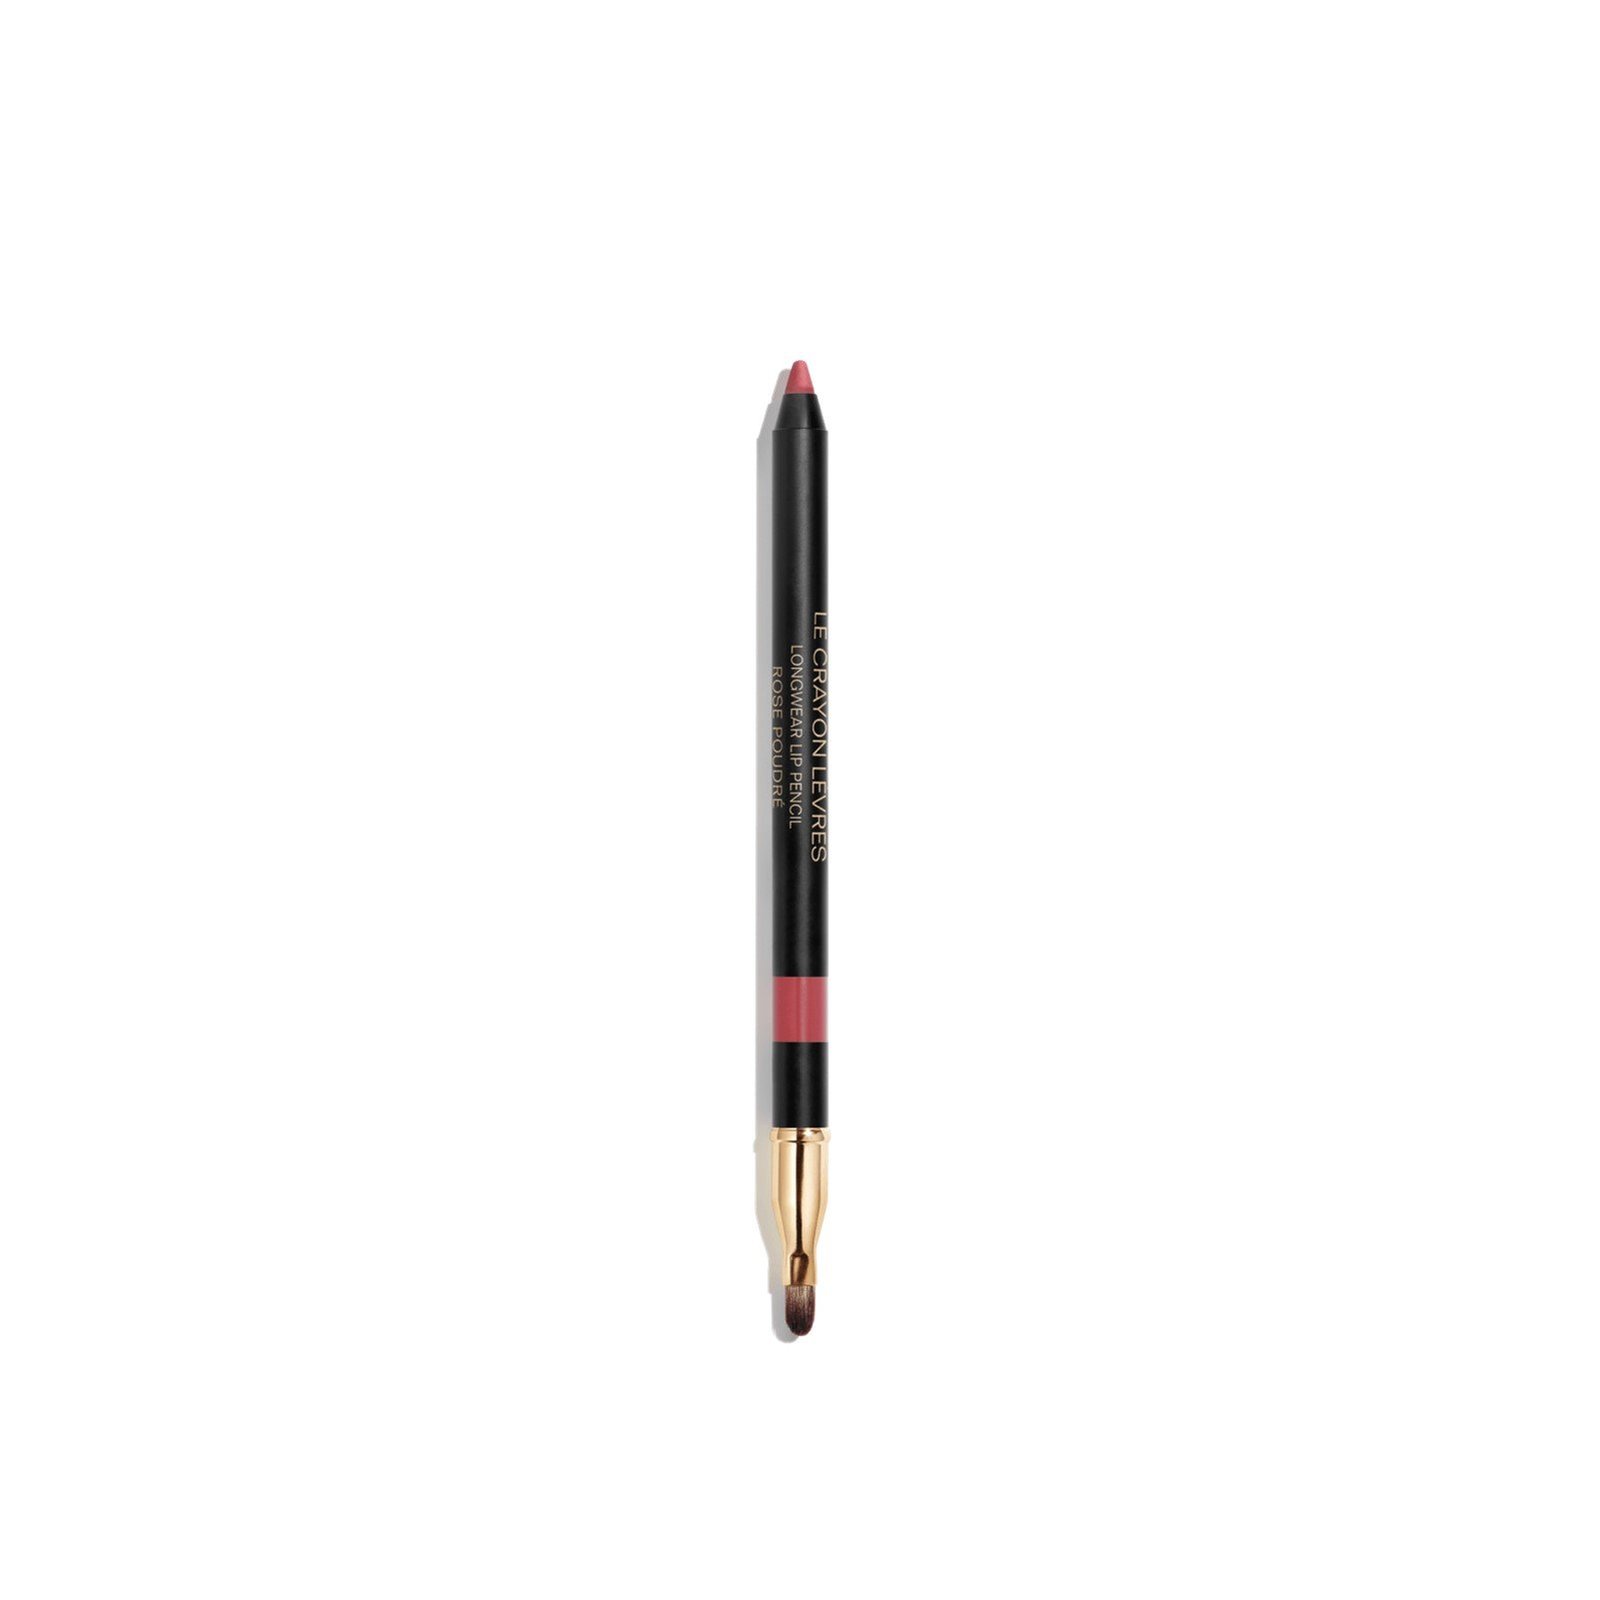 CHANEL Le Crayon Lèvres Longwear Lip Pencil 196 Rose Poudré 1.2g (0.04 oz)